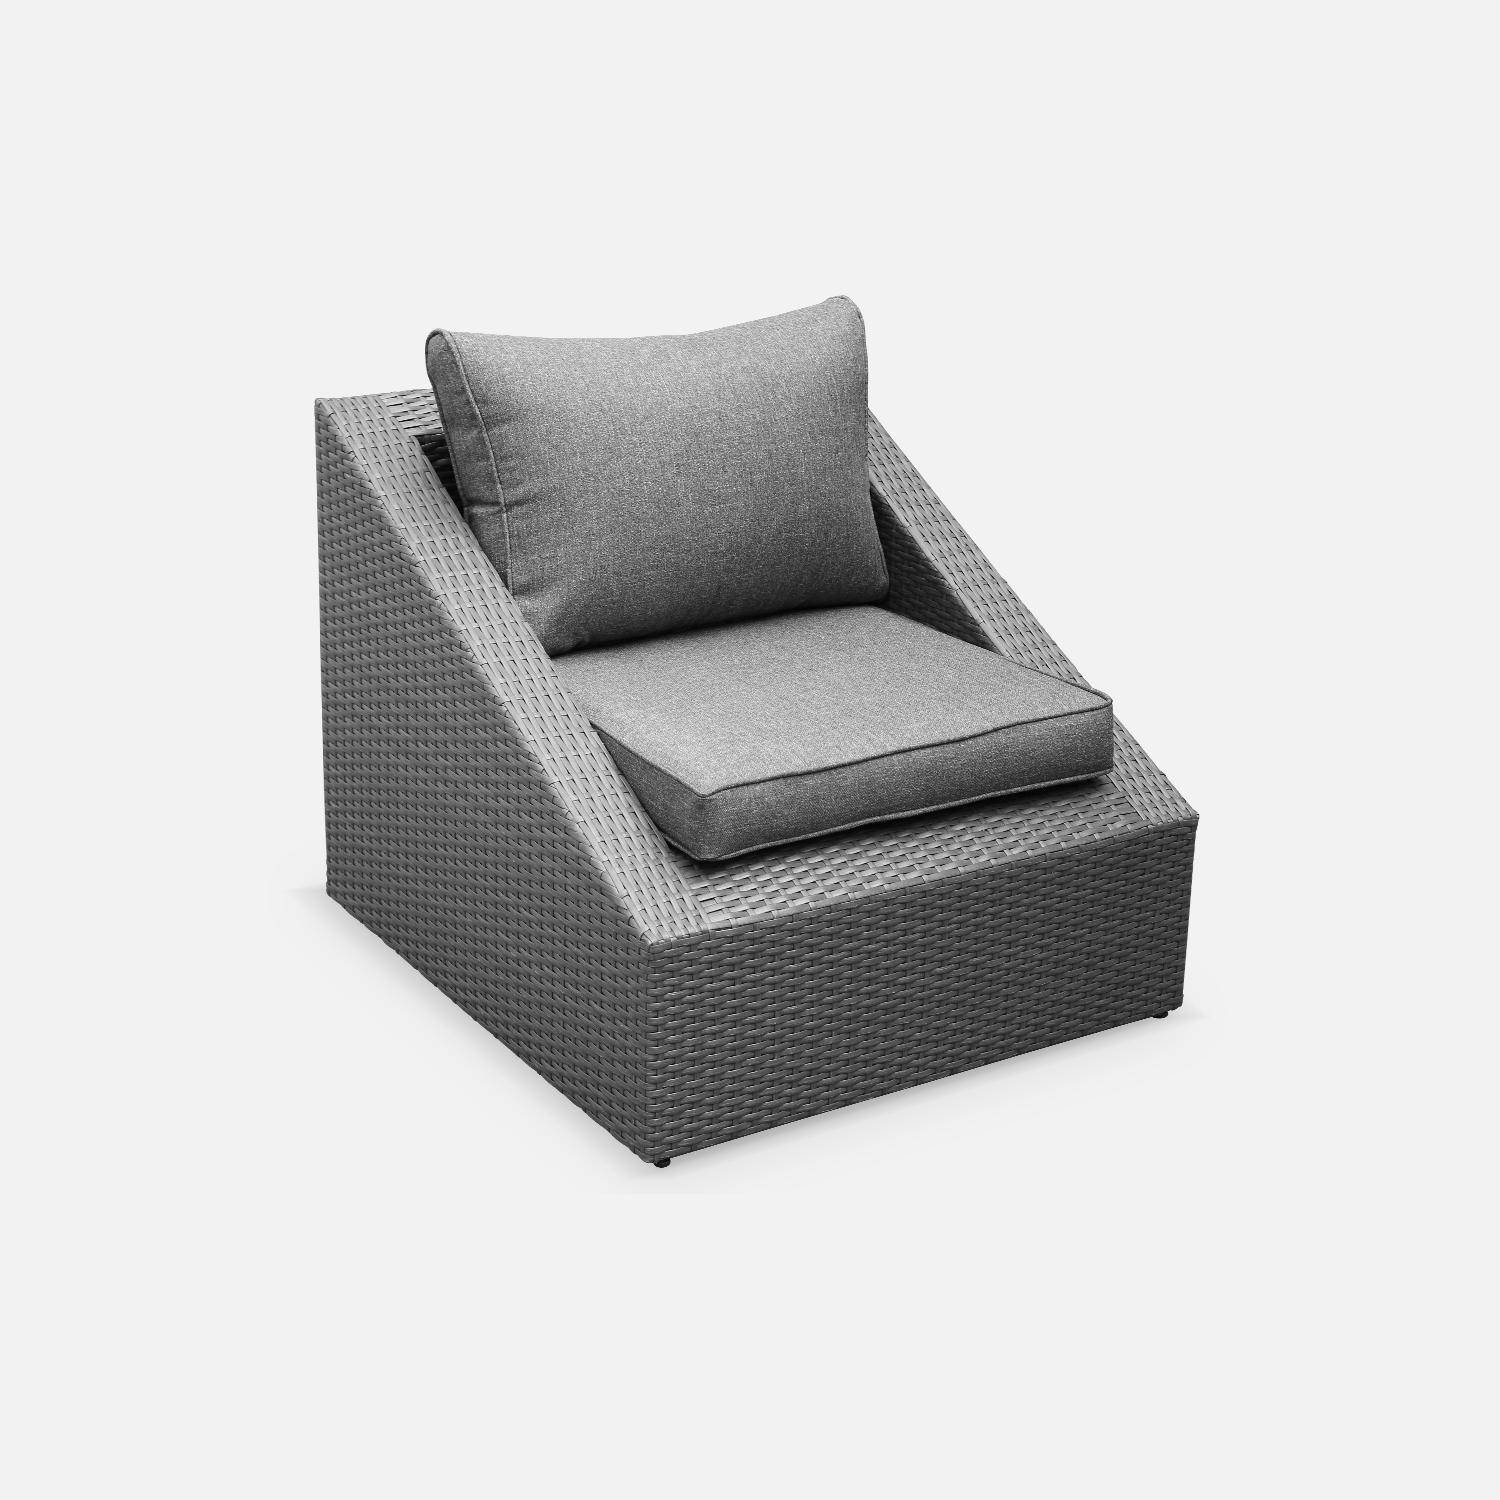 Sitzgarnitur für den Garten 2 Sitze - Triangolo - graues Kunststoffrattan, graue Kissen, Stühle + 1 Couchtisch, stapelbar Photo3